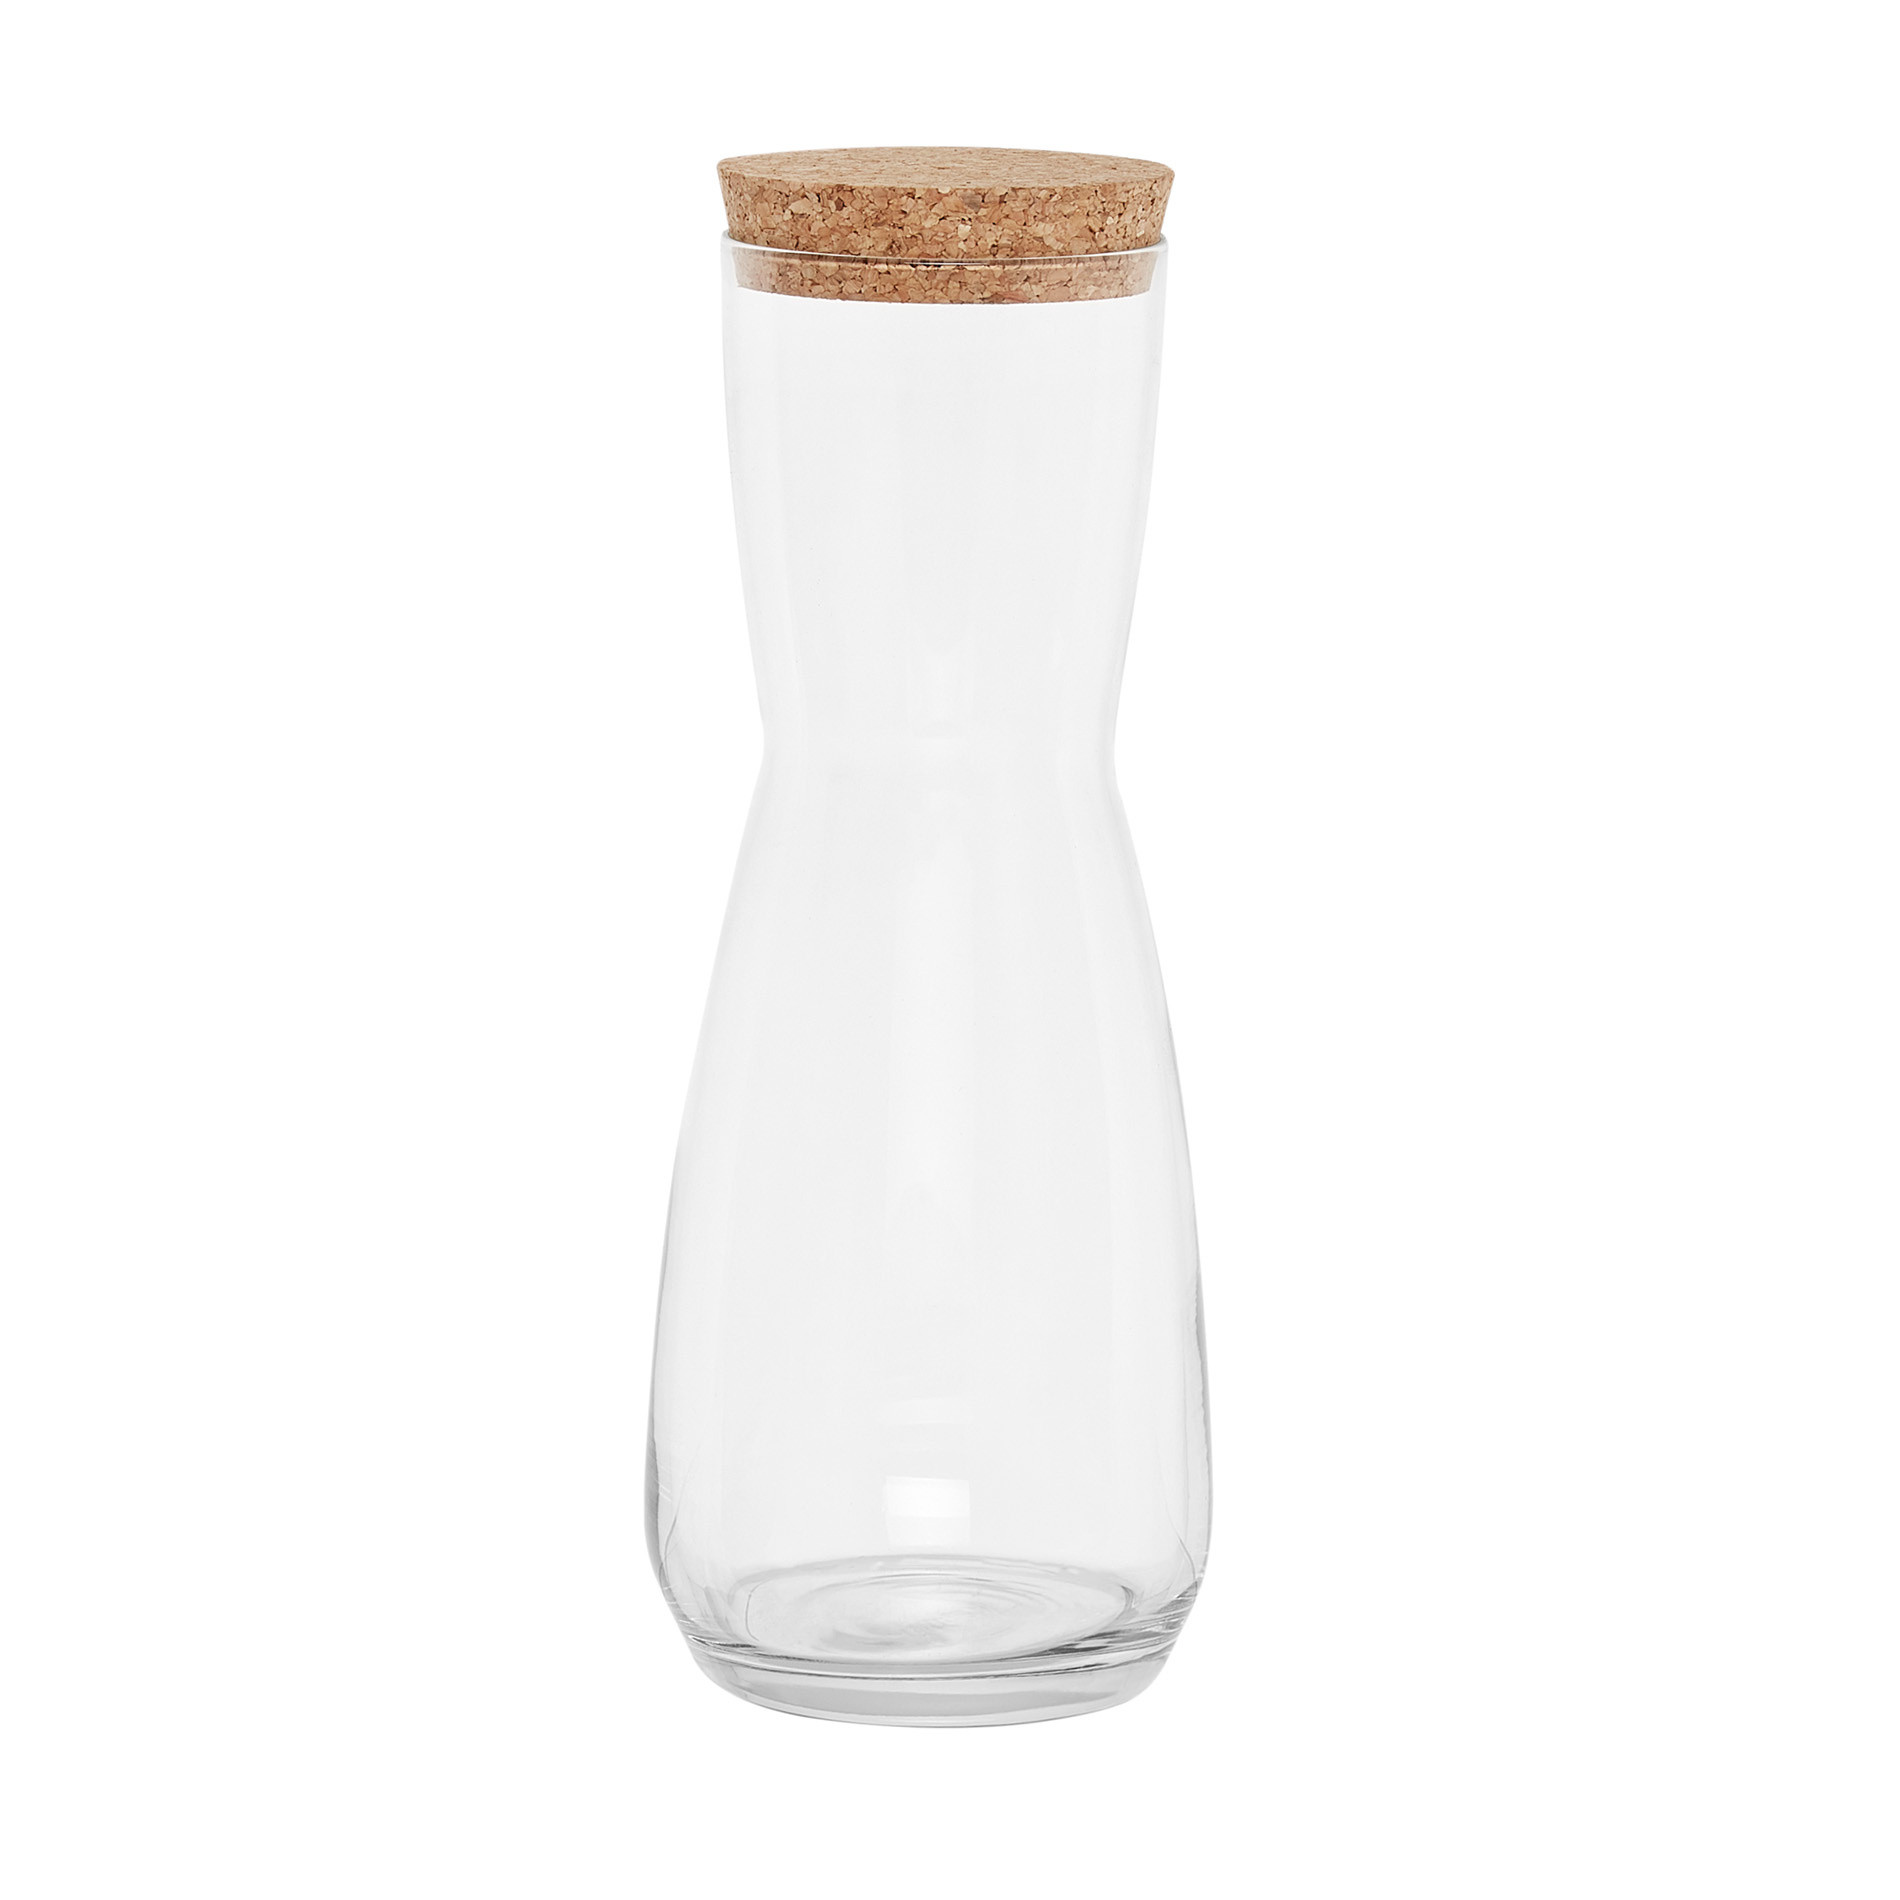 1 L glass jug with lid, Transparent, large image number 0